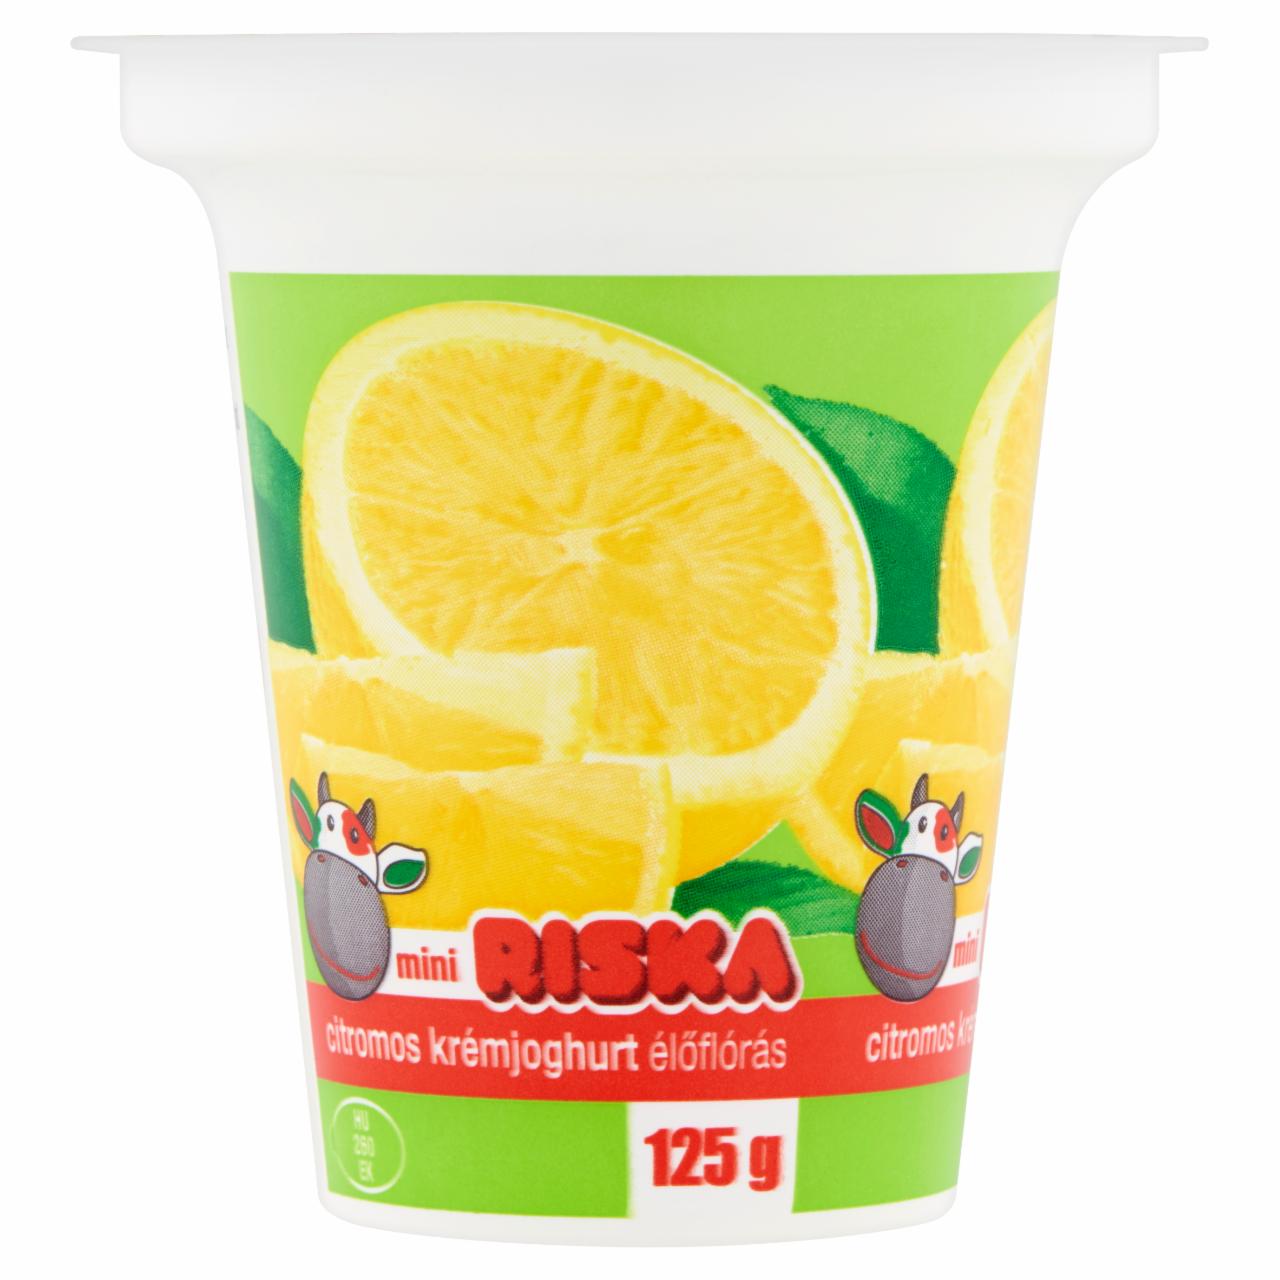 Képek - Riska mini citromos élőflórás krémjoghurt 125 g